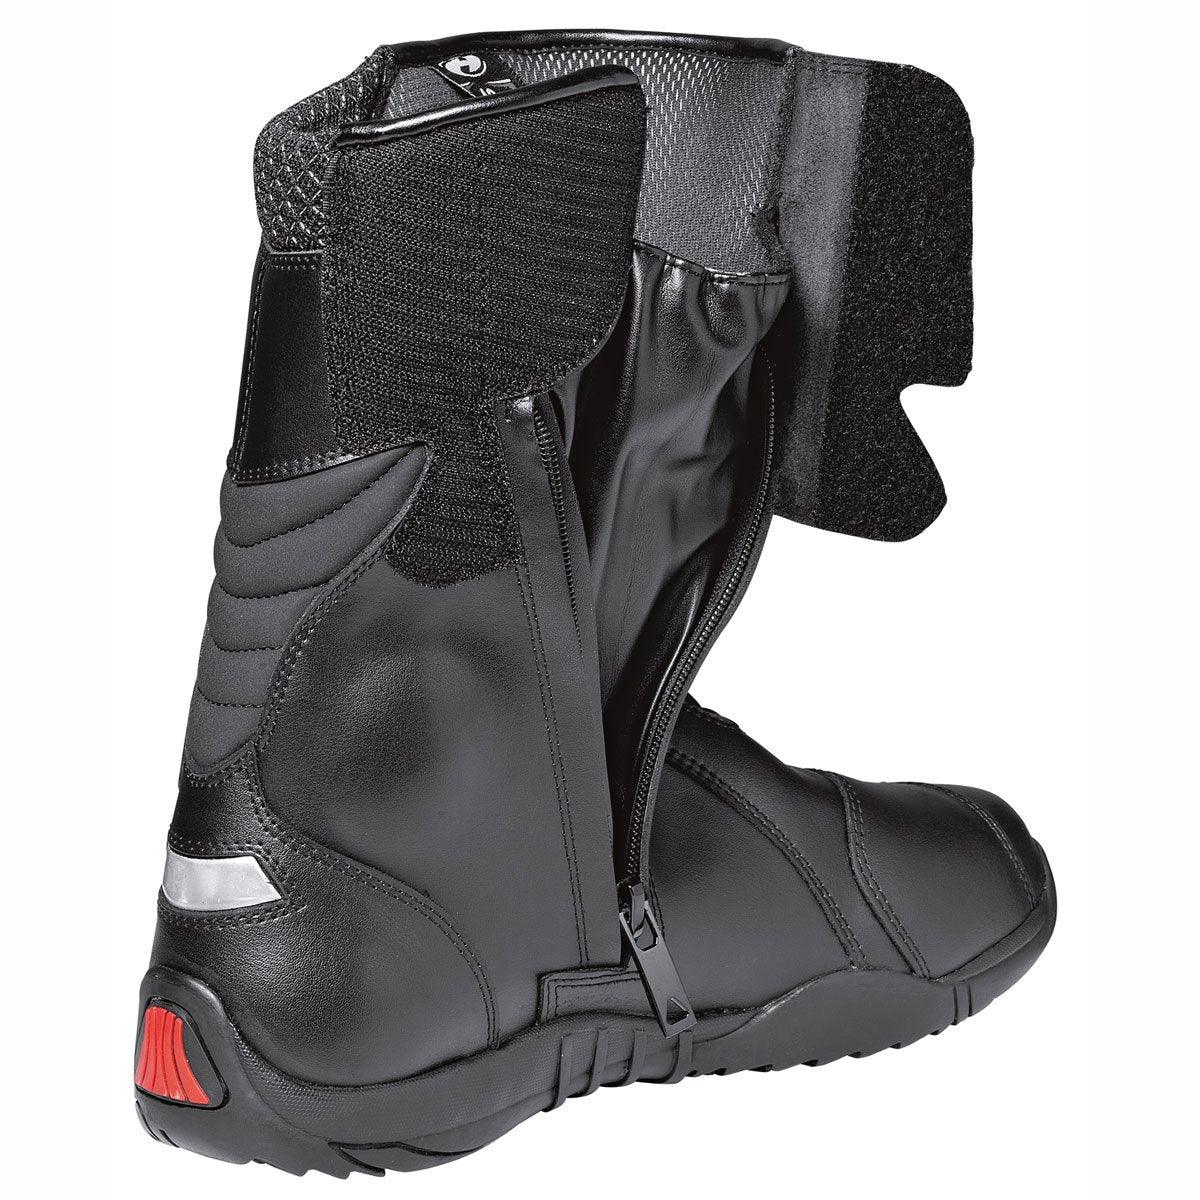 Held Gear 8240 Boots WP Black - Motorcycle Footwear